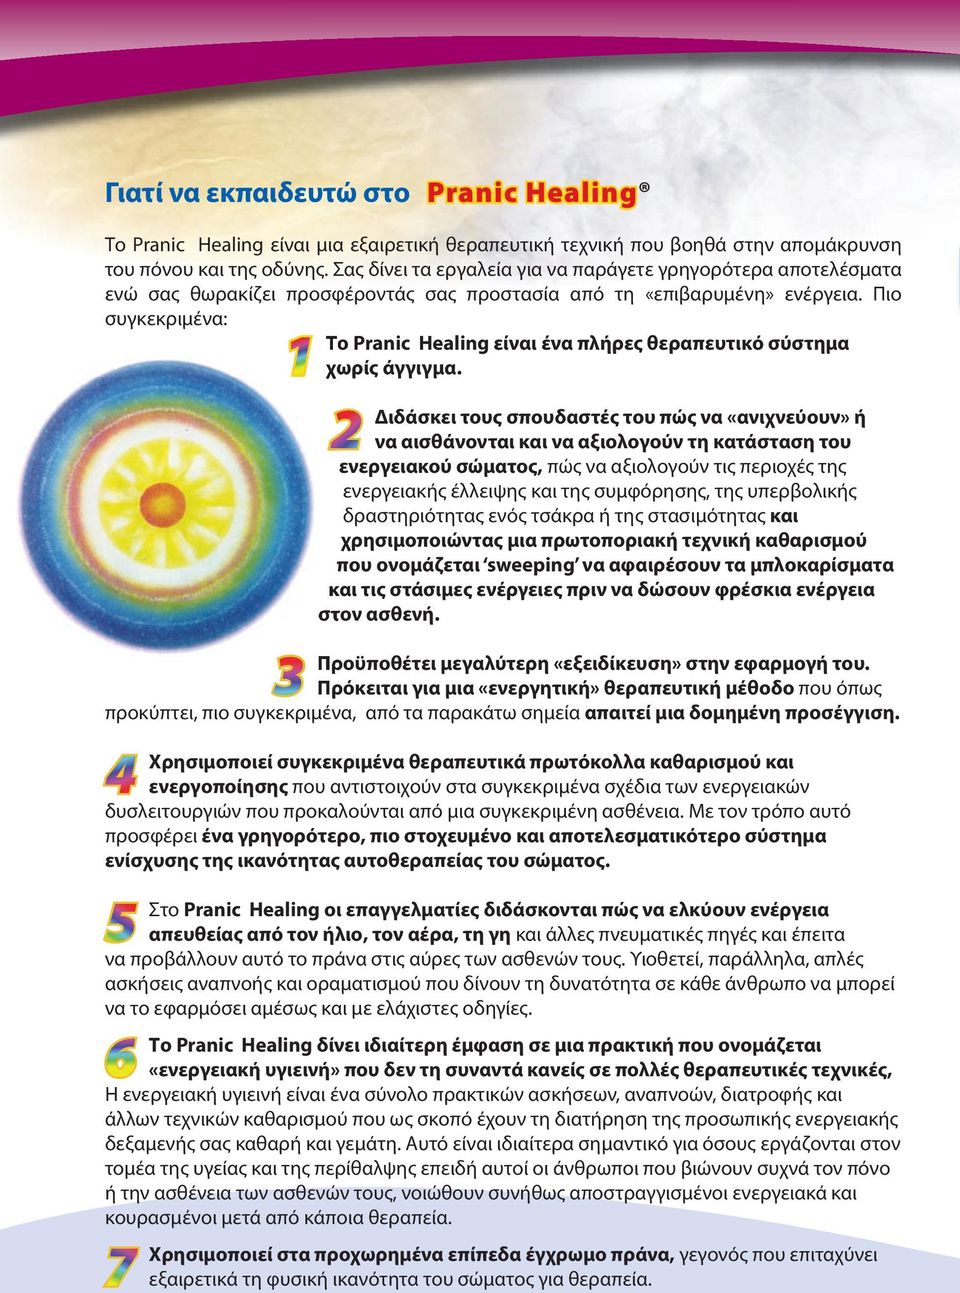 Πιο συγκεκριμένα: 1 Το Pranic Healing είναι ένα πλήρες θεραπευτικό σύστημα χωρίς άγγιγμα.